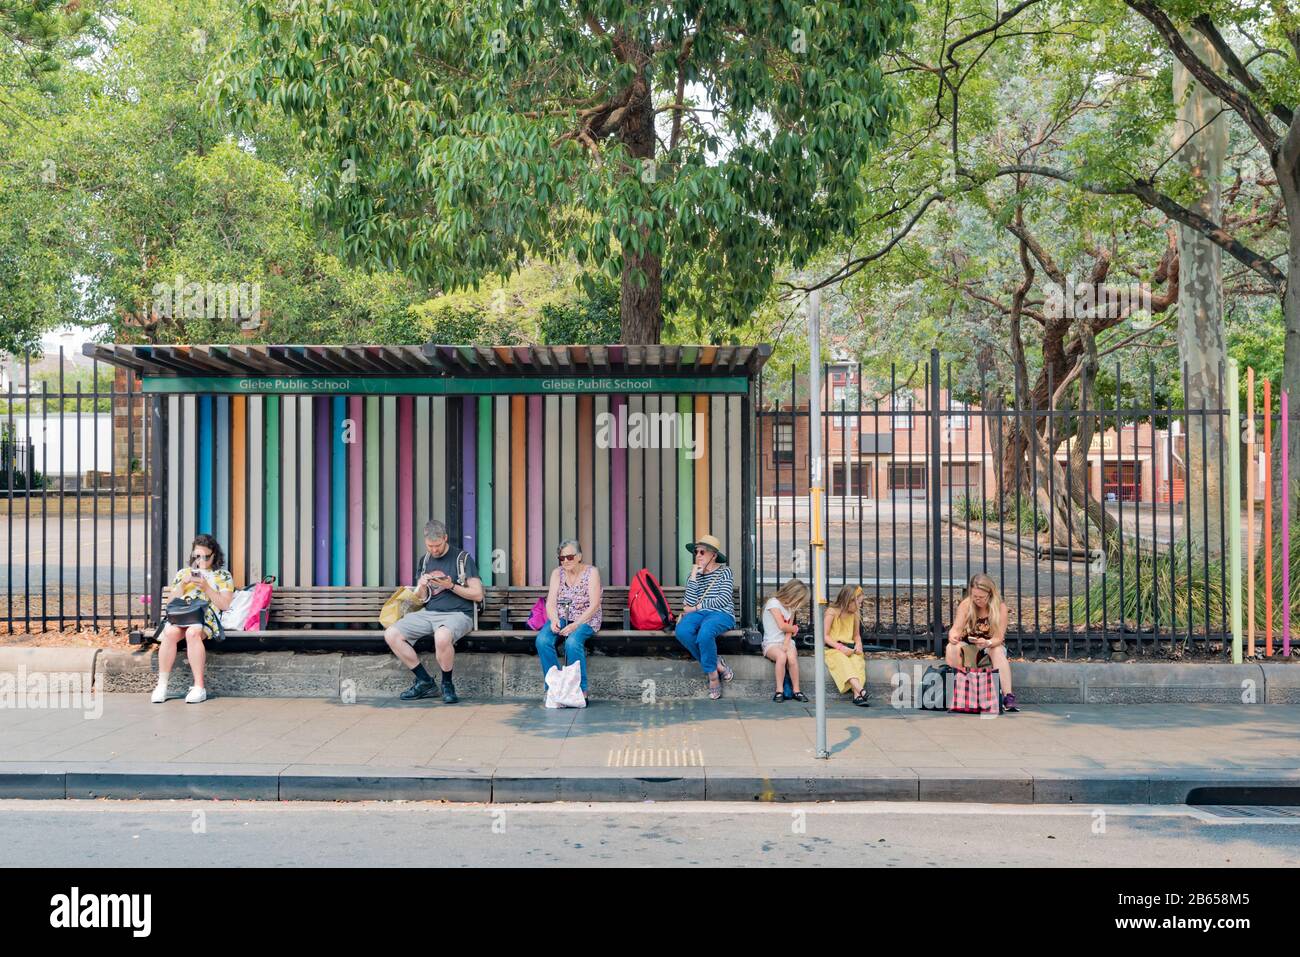 Les gens de tous âges s'assoient et attendent à l'arrêt de bus Glebe public School lors d'un matin d'été chaud pour leur bus à Sydney, Nouvelle-Galles du Sud, Australie Banque D'Images